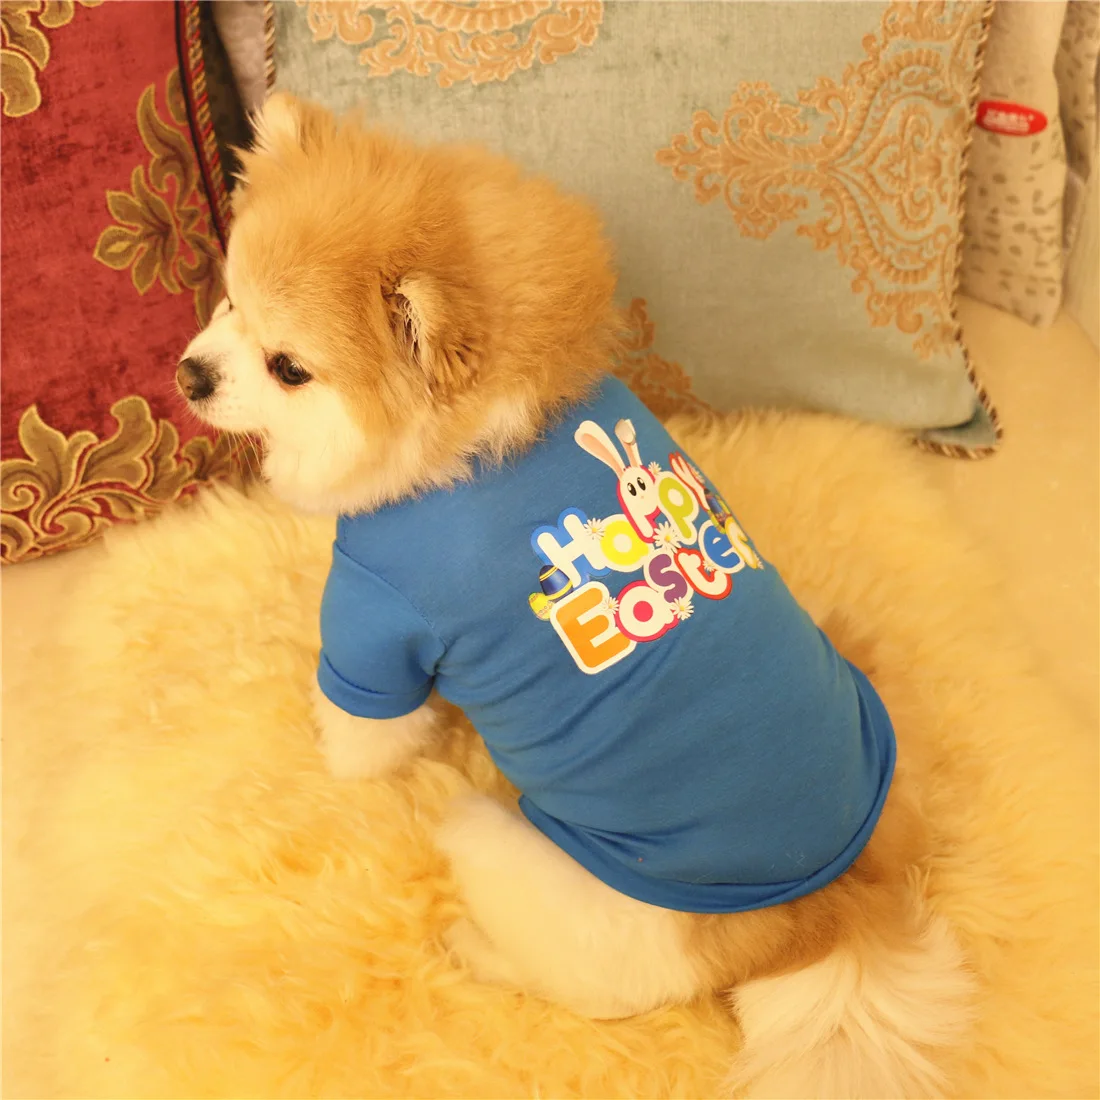 Пасха Стиль мультфильм жилетка для собак питомец футболка для детей Одежда для маленькой собаки летняя хлопковая смесь ПЭТ Костюмы принтом щенок Костюмы XS-L